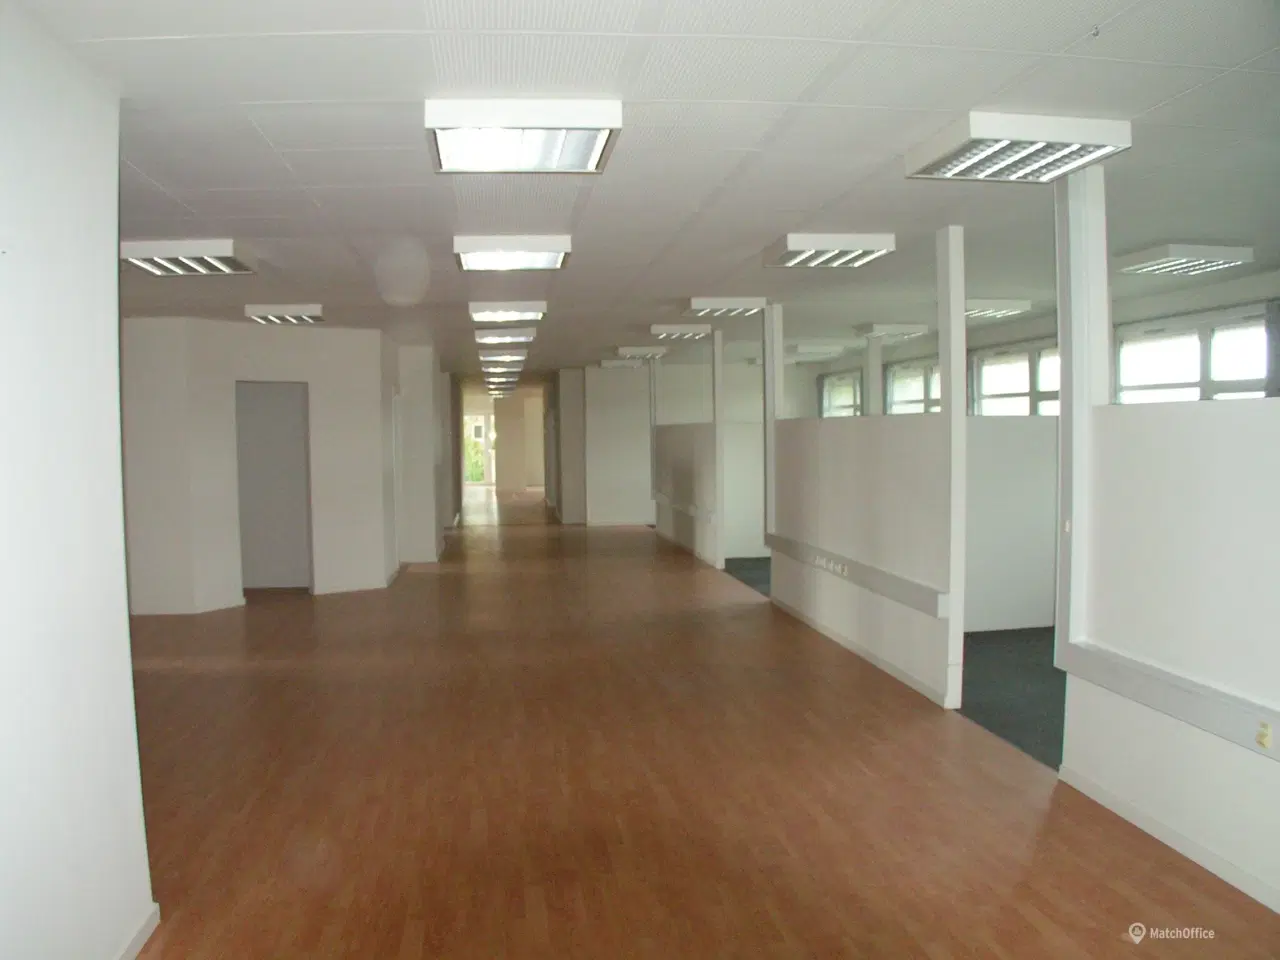 Billede 2 - Flotte kontorlokaler med stor synlighed